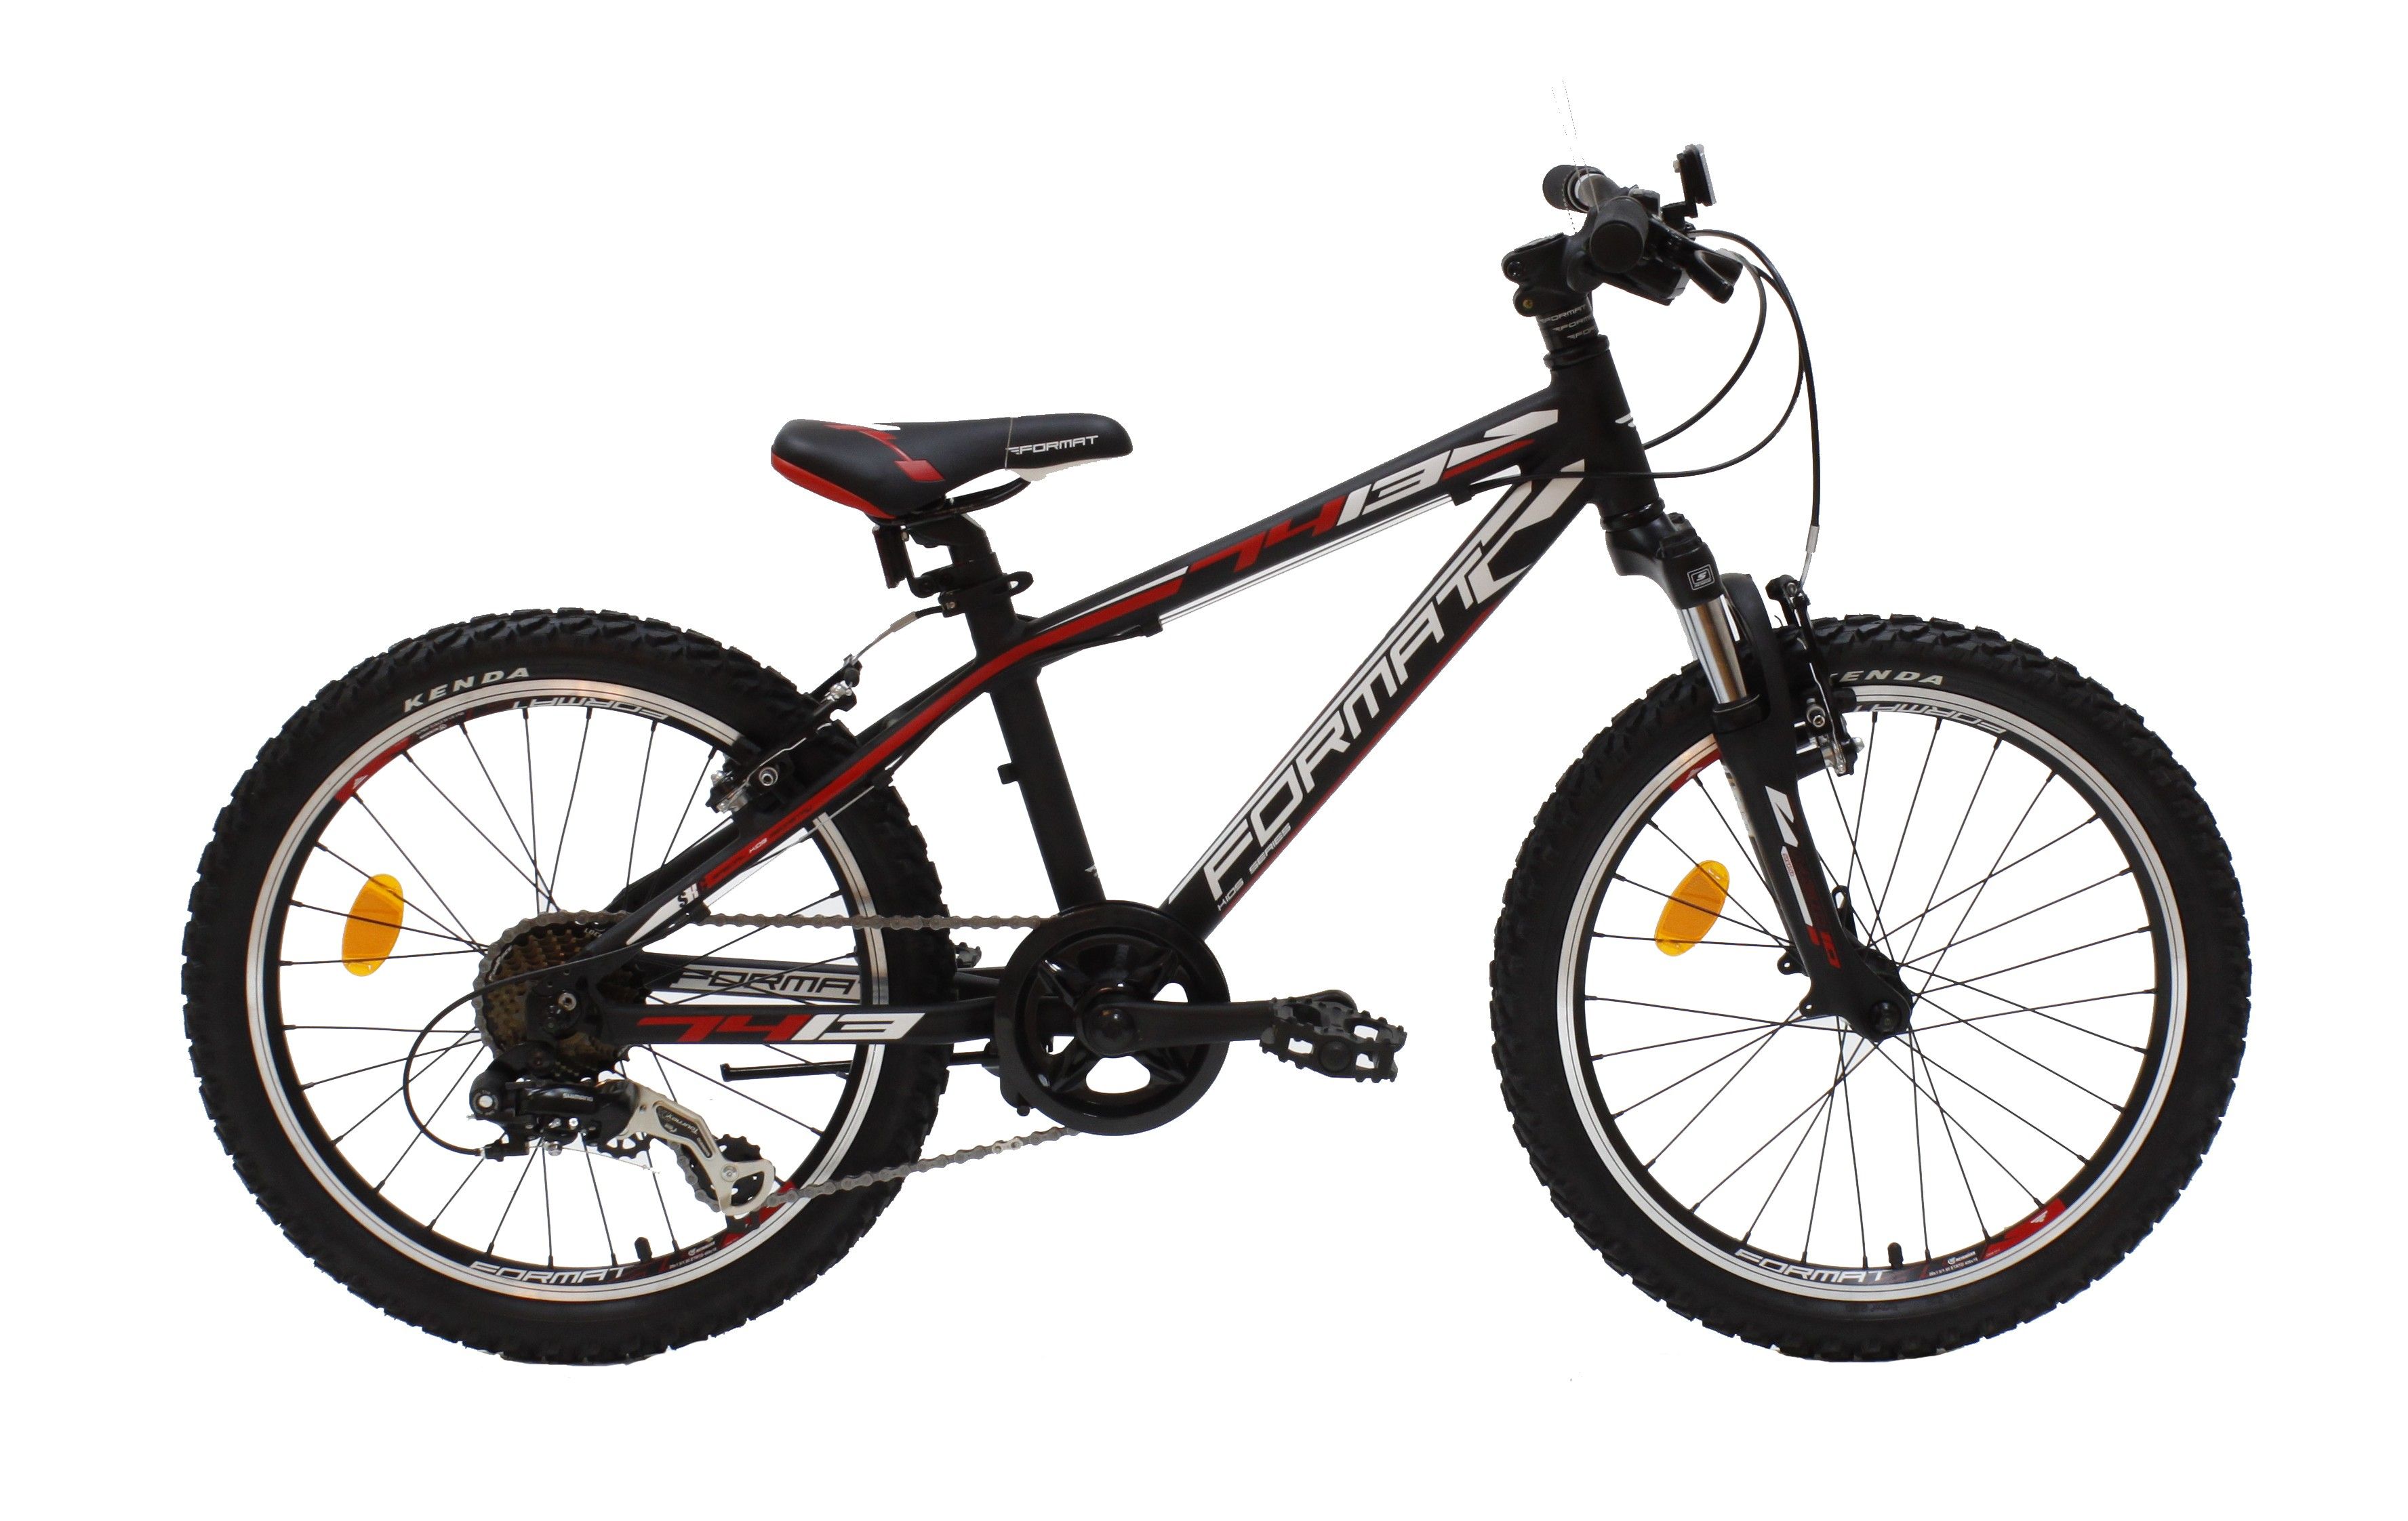  Велосипед Format 7413 boy 2015